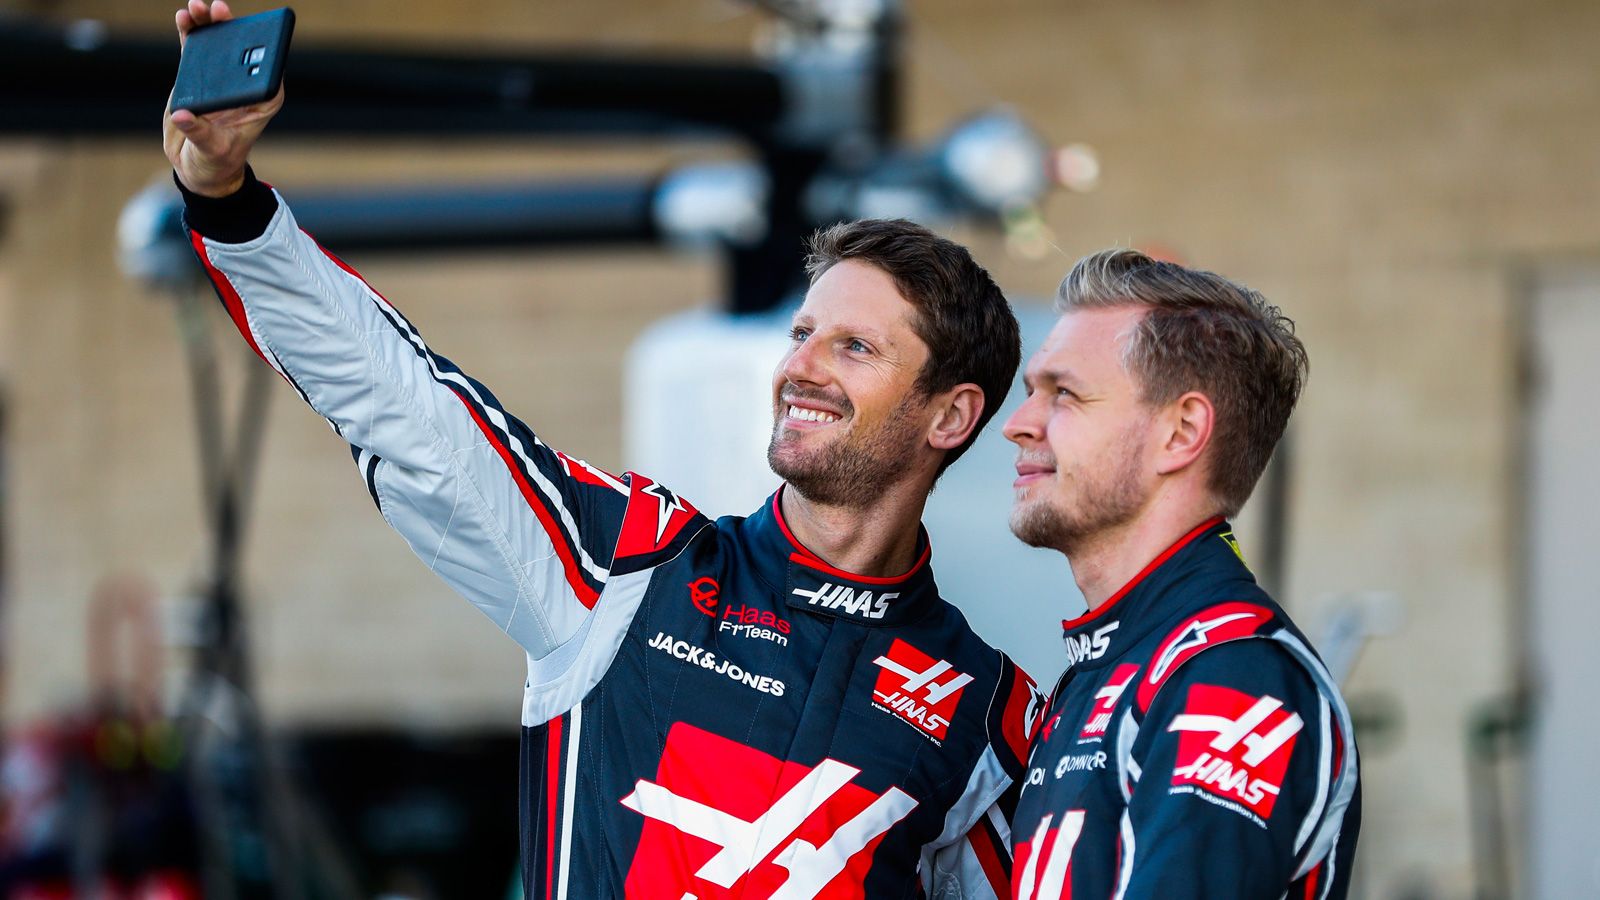 Haas F1 team's weekend at Circuit of Americas goes bad